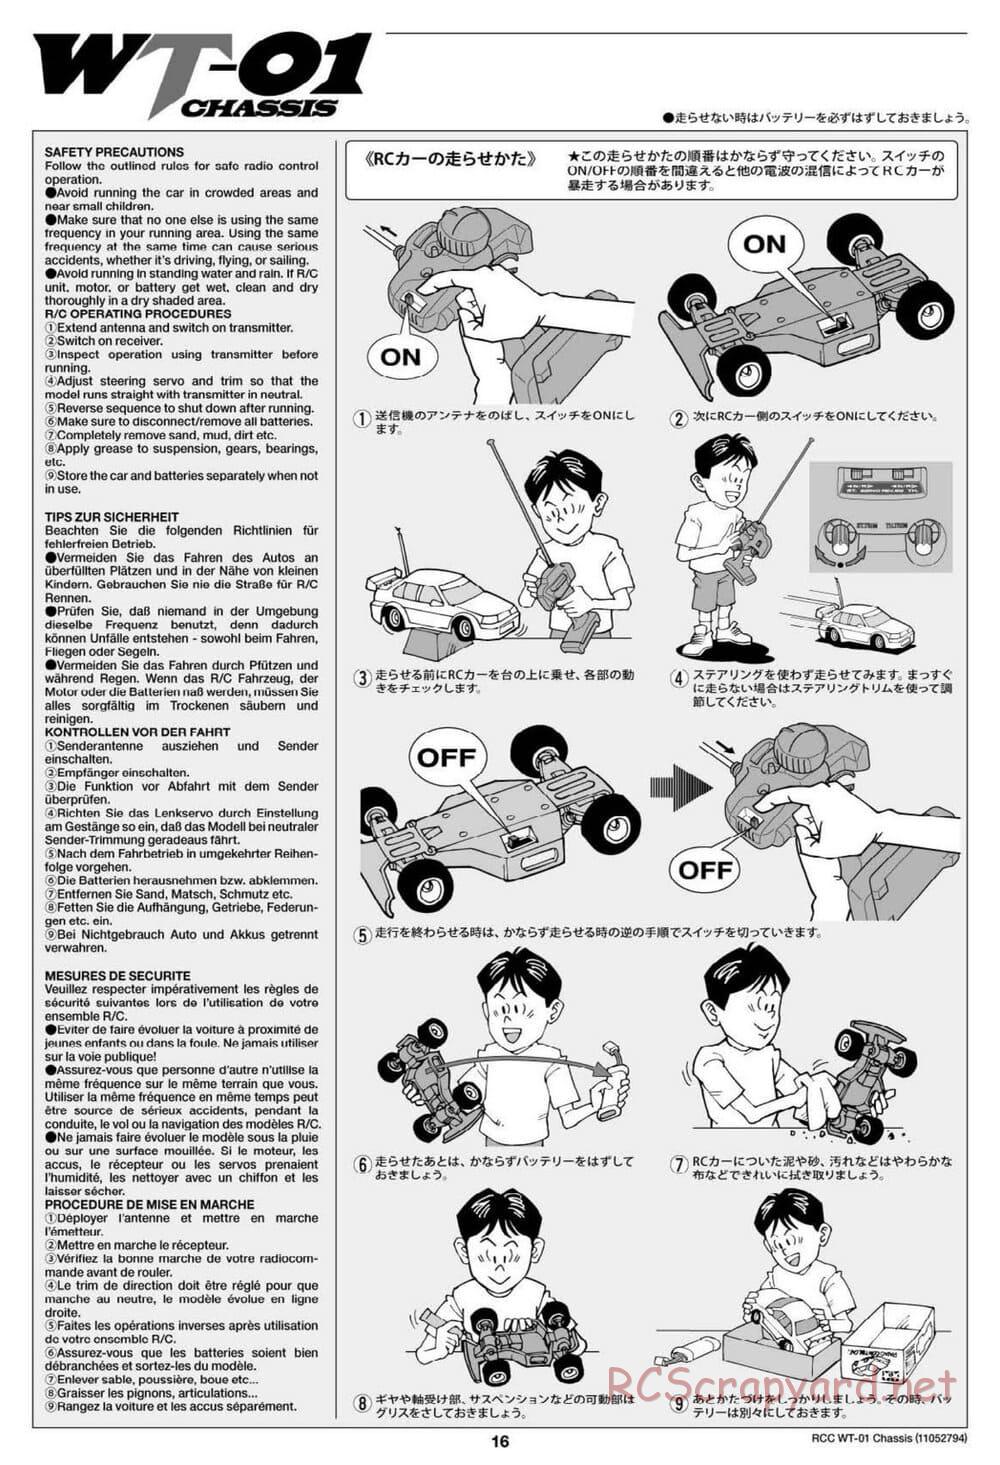 Tamiya - WT-01 Chassis - Manual - Page 16